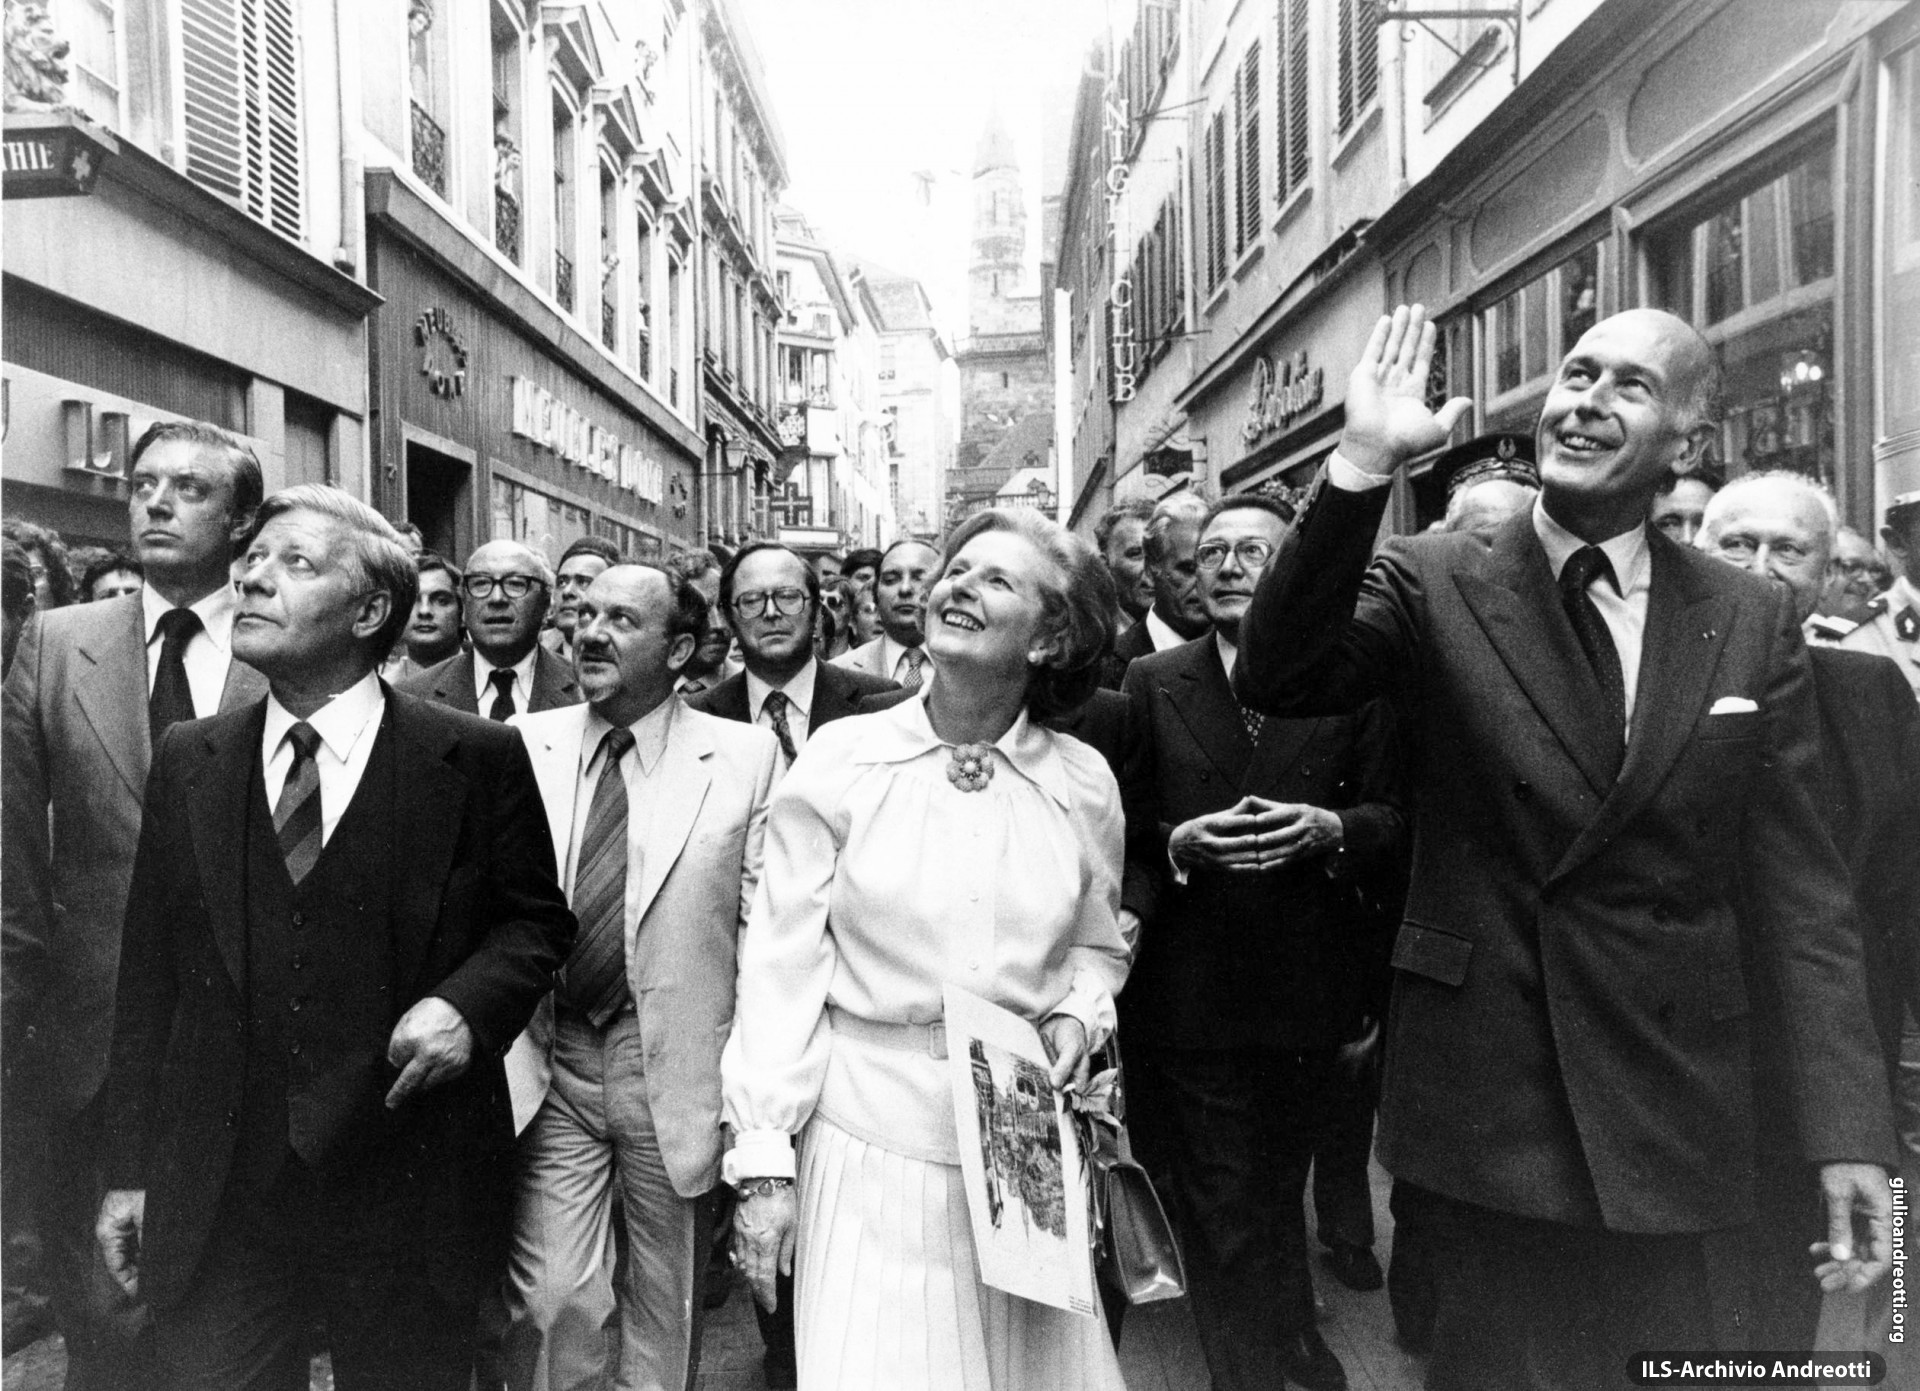 21 giugno 1979. I leader europei a passeggio nelle strade di Strasburgo in occasione del Consiglio europeo.